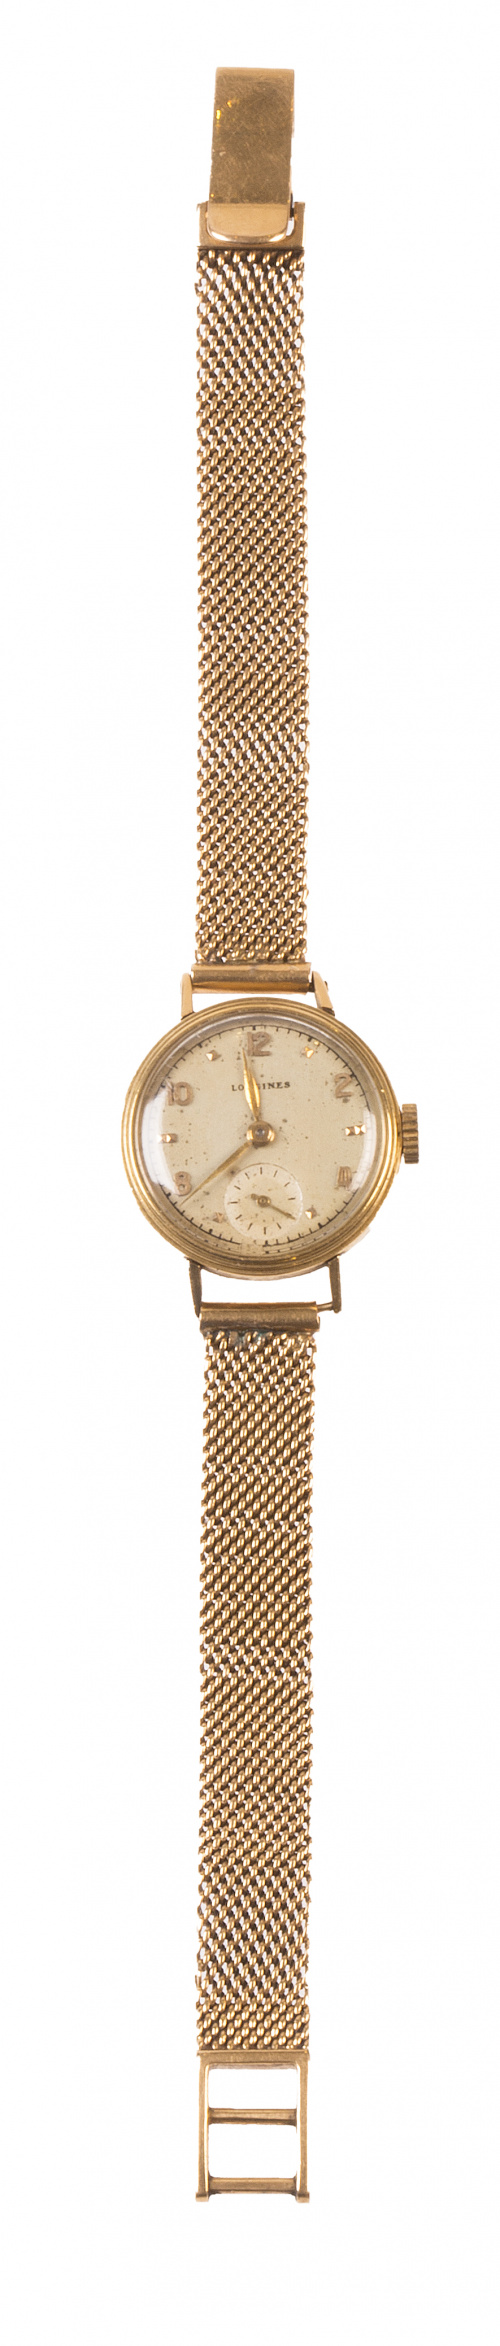 Reloj de pulsera para sra LONGINES en oro amarillo de 18K